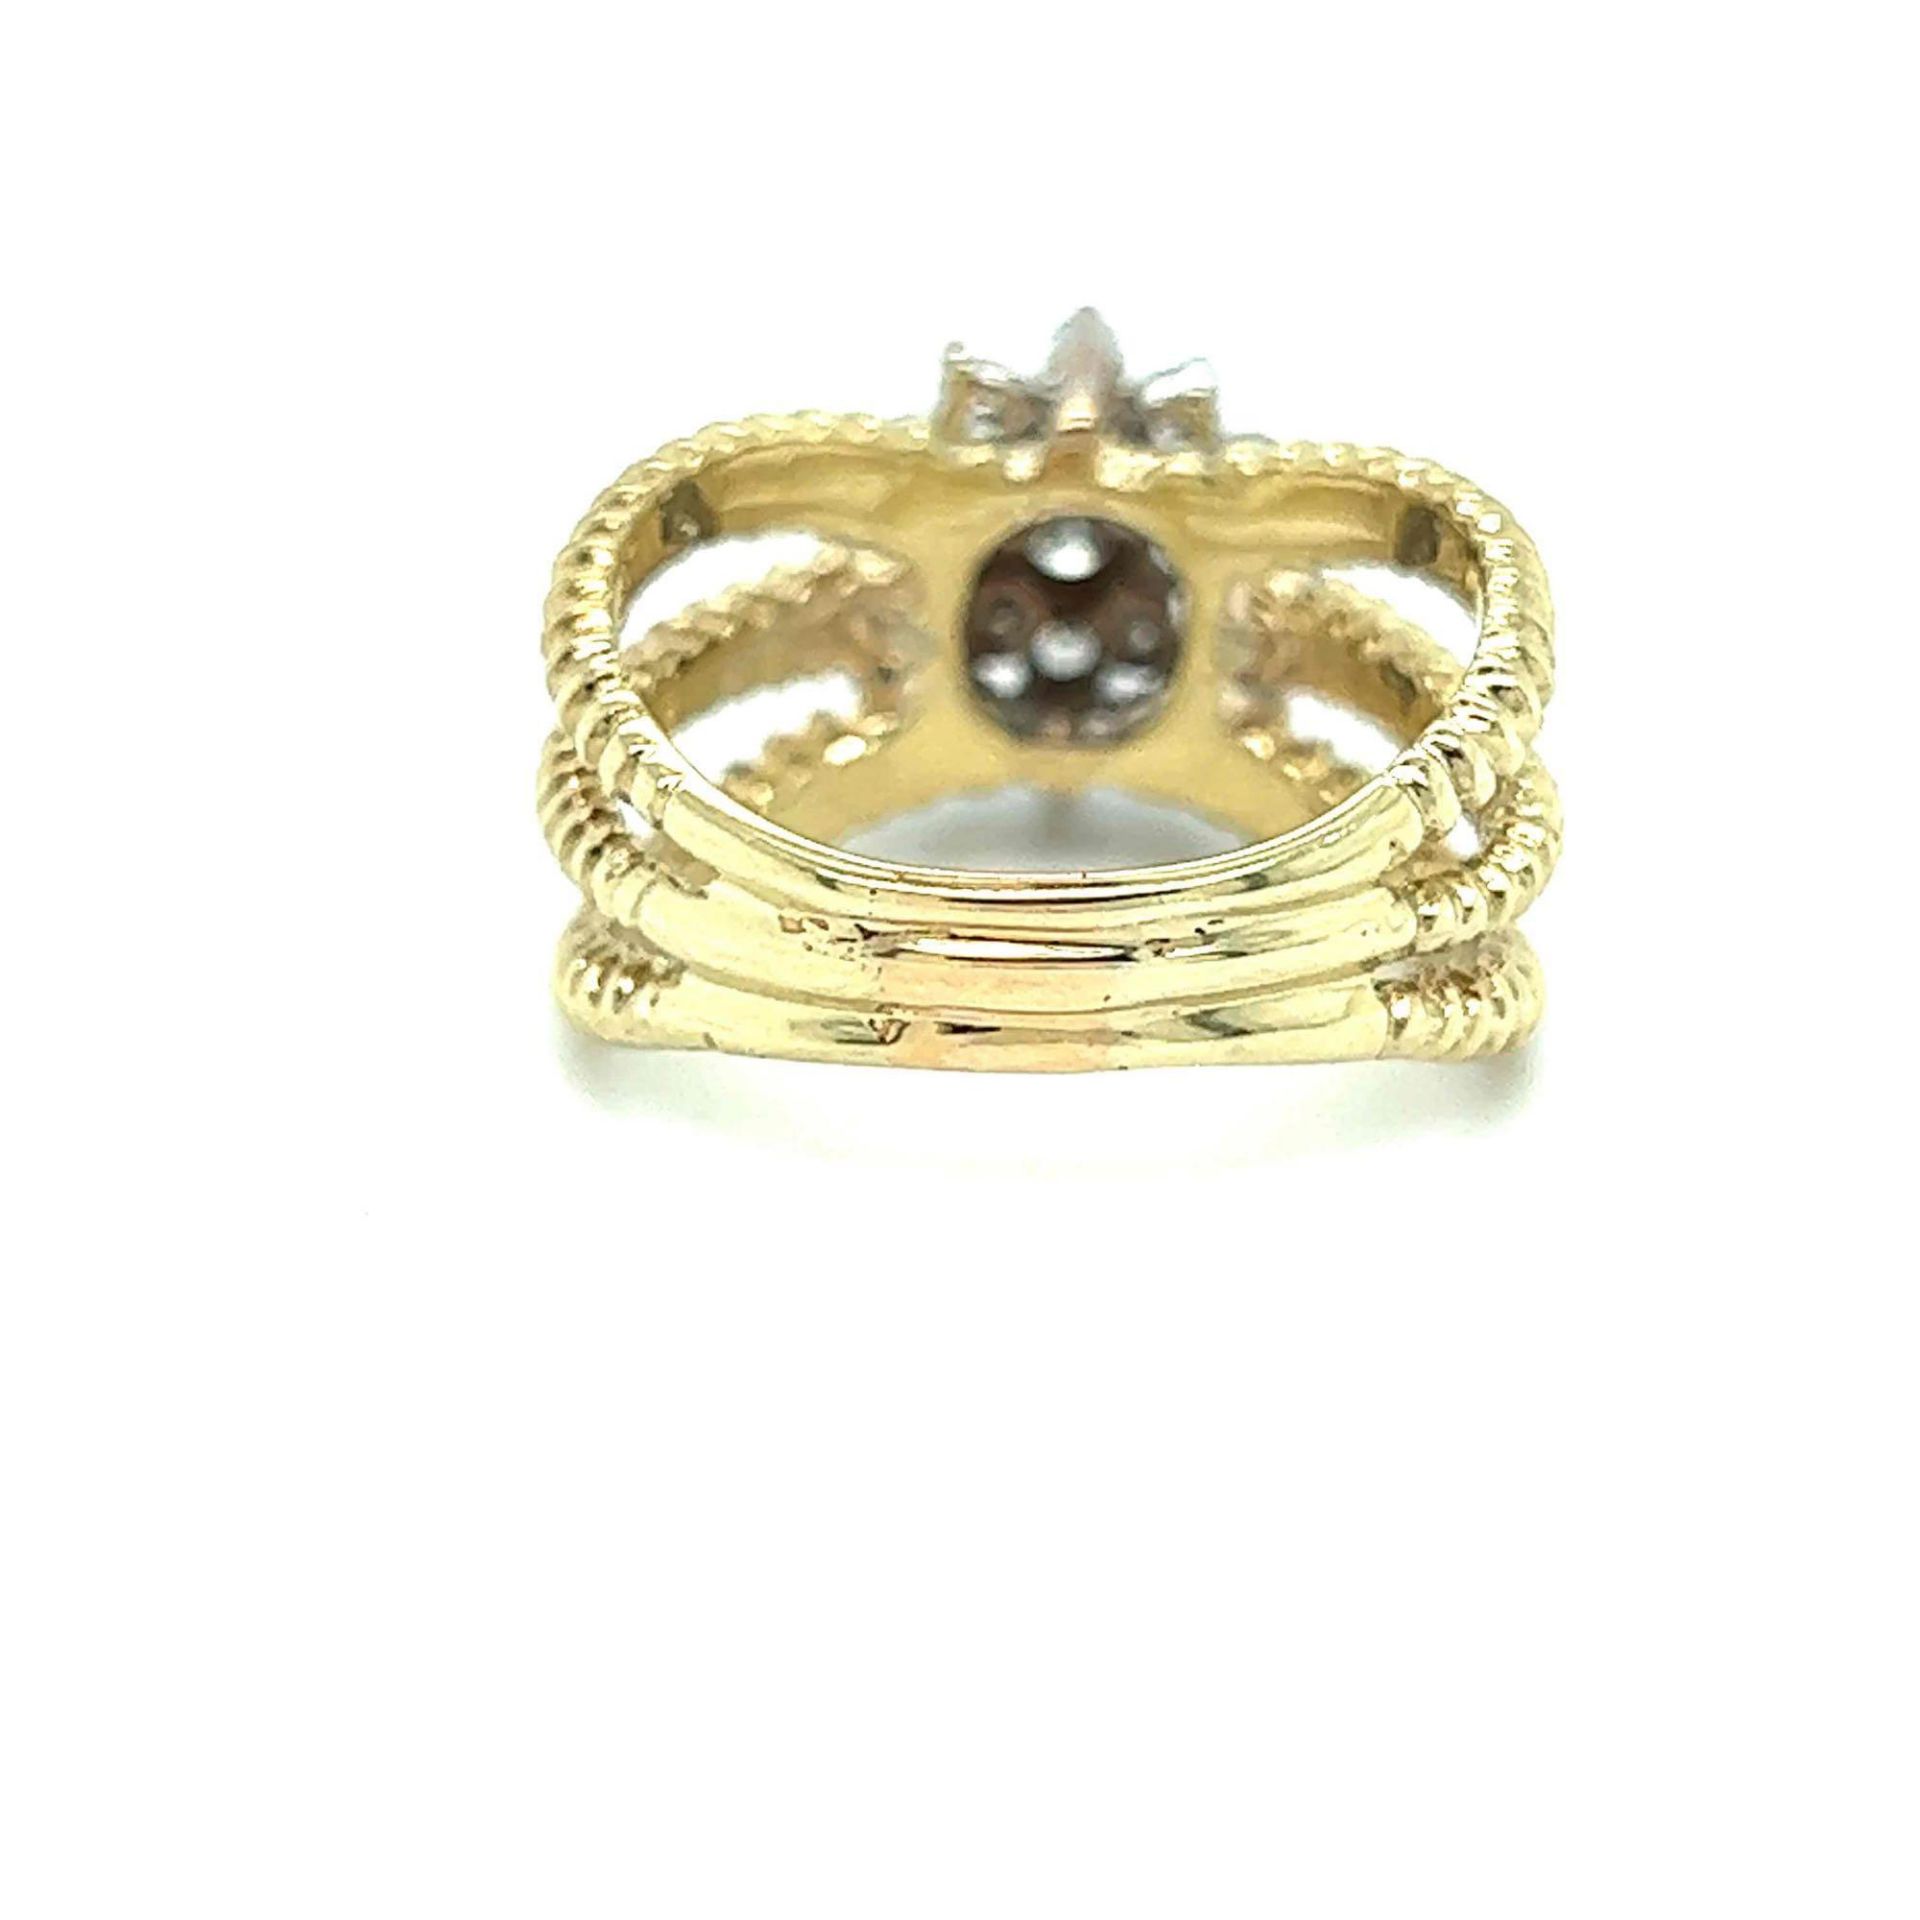 ESTATE LADIES DIAMOND RING 14K YELLOW GOLD - Image 3 of 3